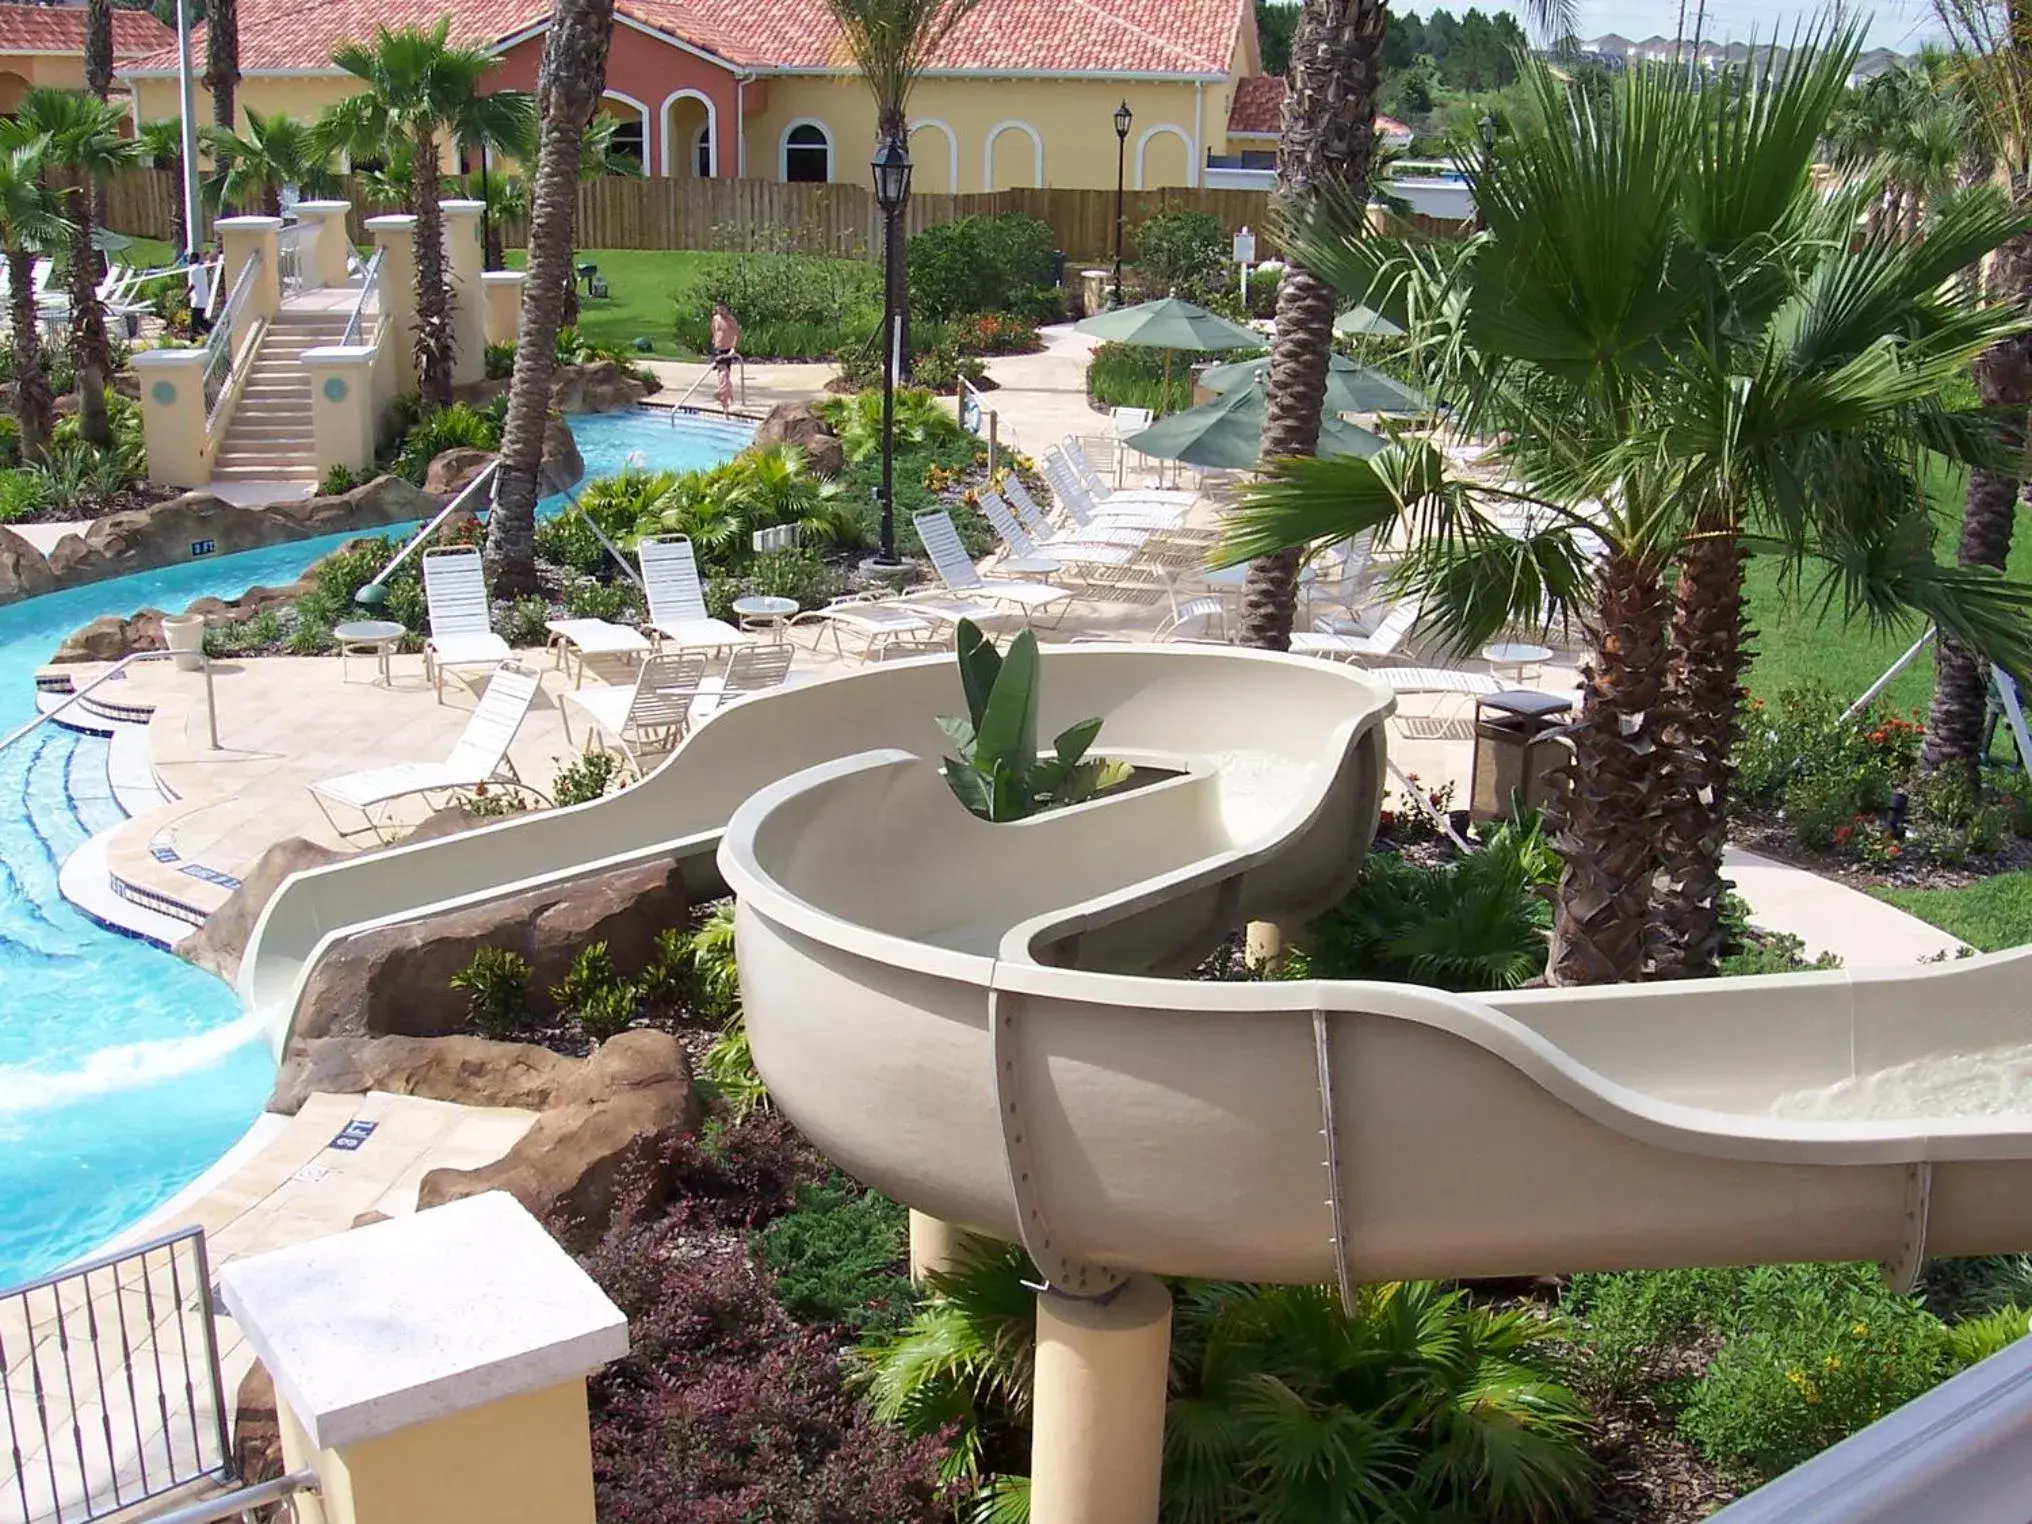 Aqua park, Pool View in Regal Palms Resort & Spa